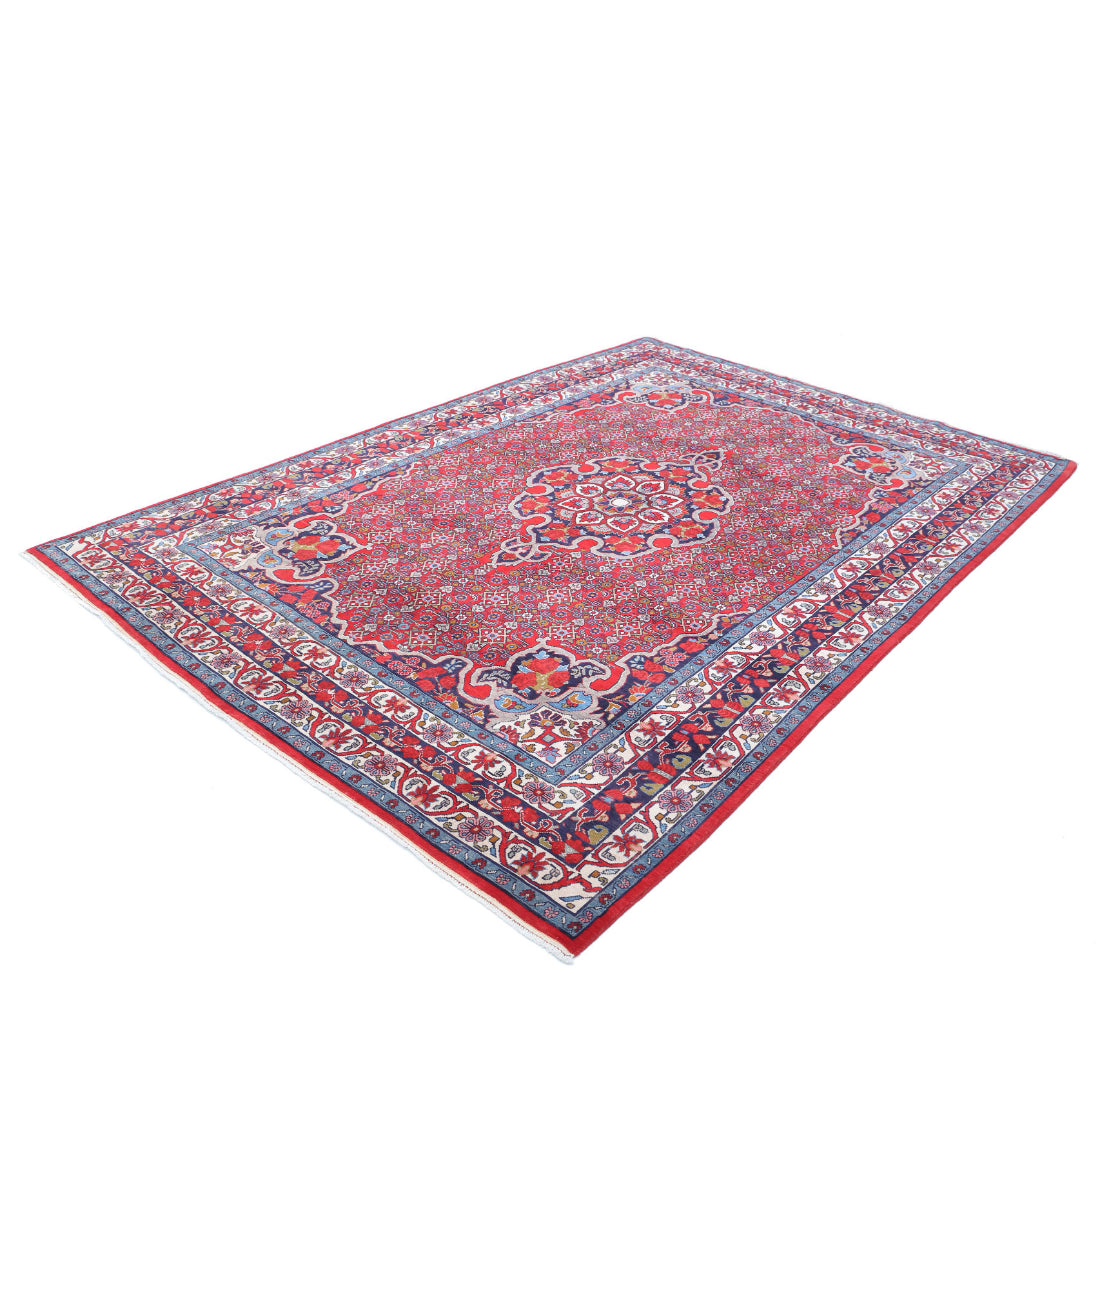 Hand Knotted Persian Bijar Wool Rug - 6'9'' x 9'8'' 6'9'' x 9'8'' (203 X 290) / Red / Blue